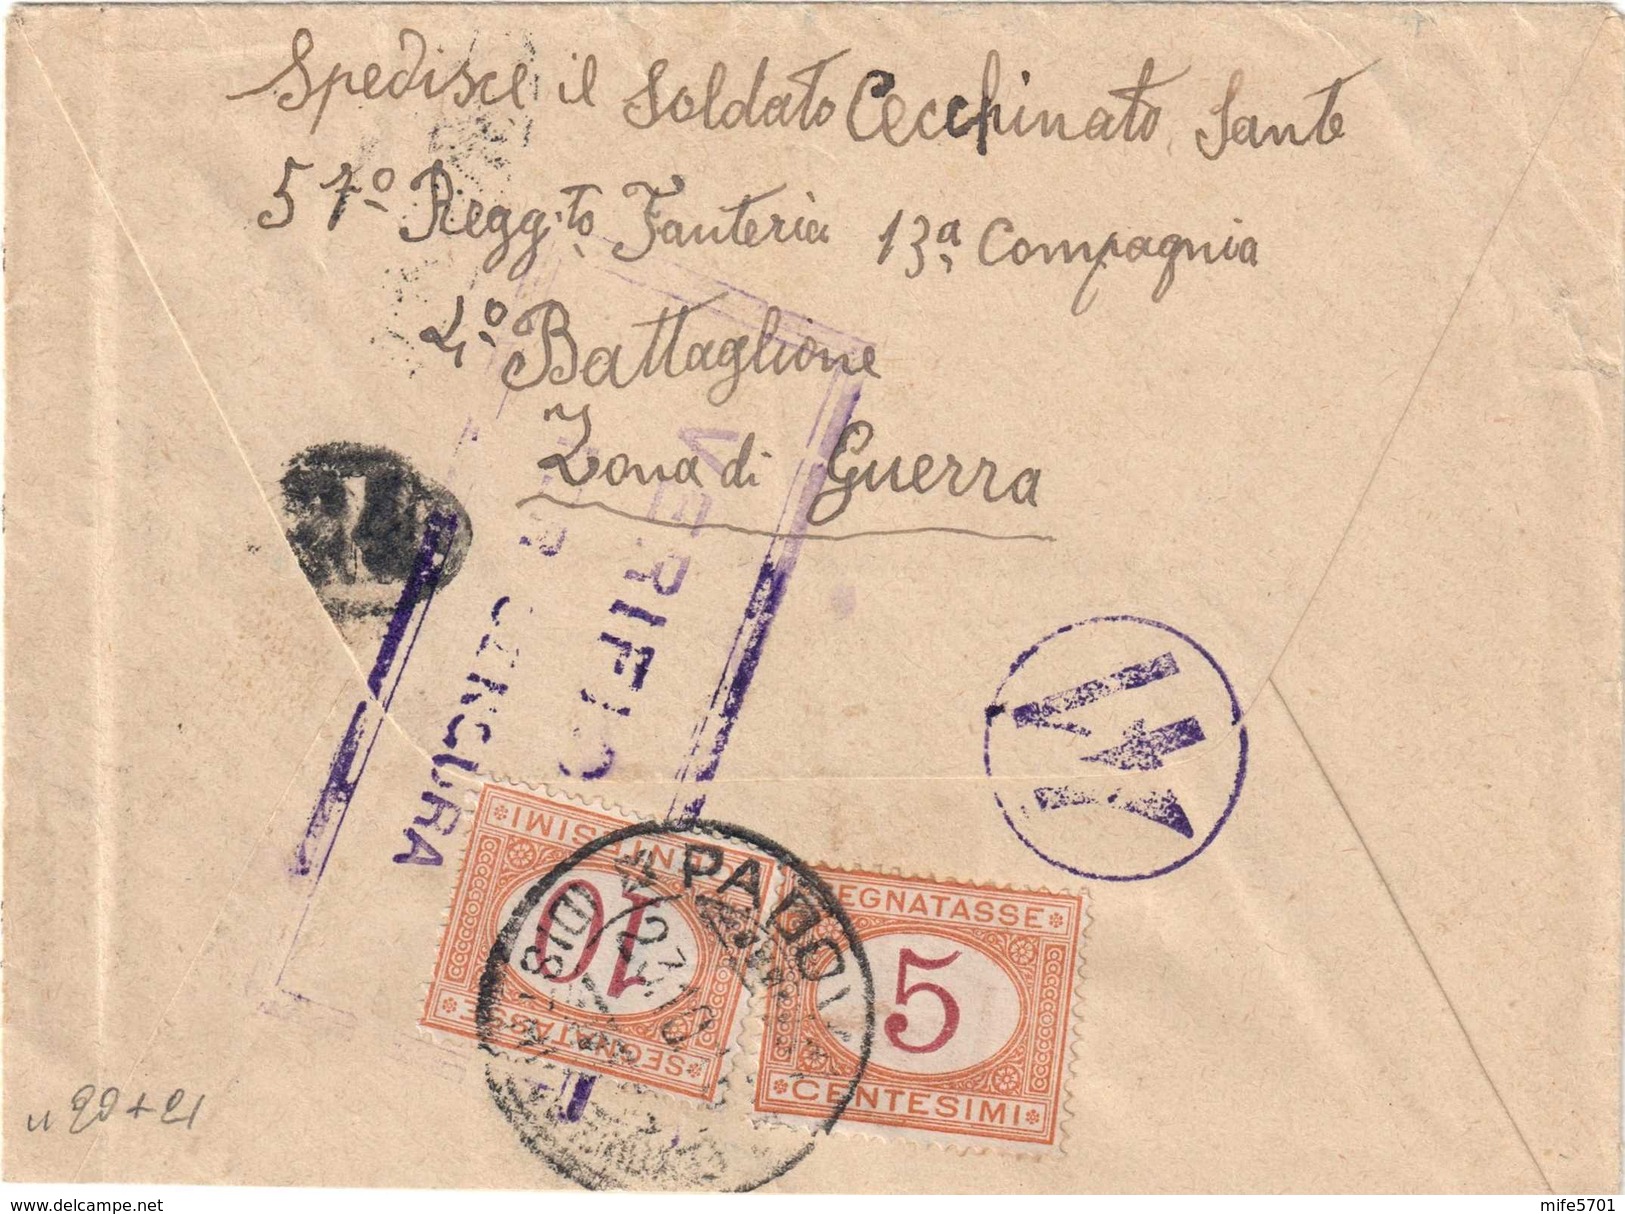 UFFICIO POSTA MILITARE 15° DIVISIONE PER PADOVA, 21/10/1915 - TASSATA AL RETRO CON C. 5 + 10 - SASSONE TAX 20 / 21 - Segnatasse